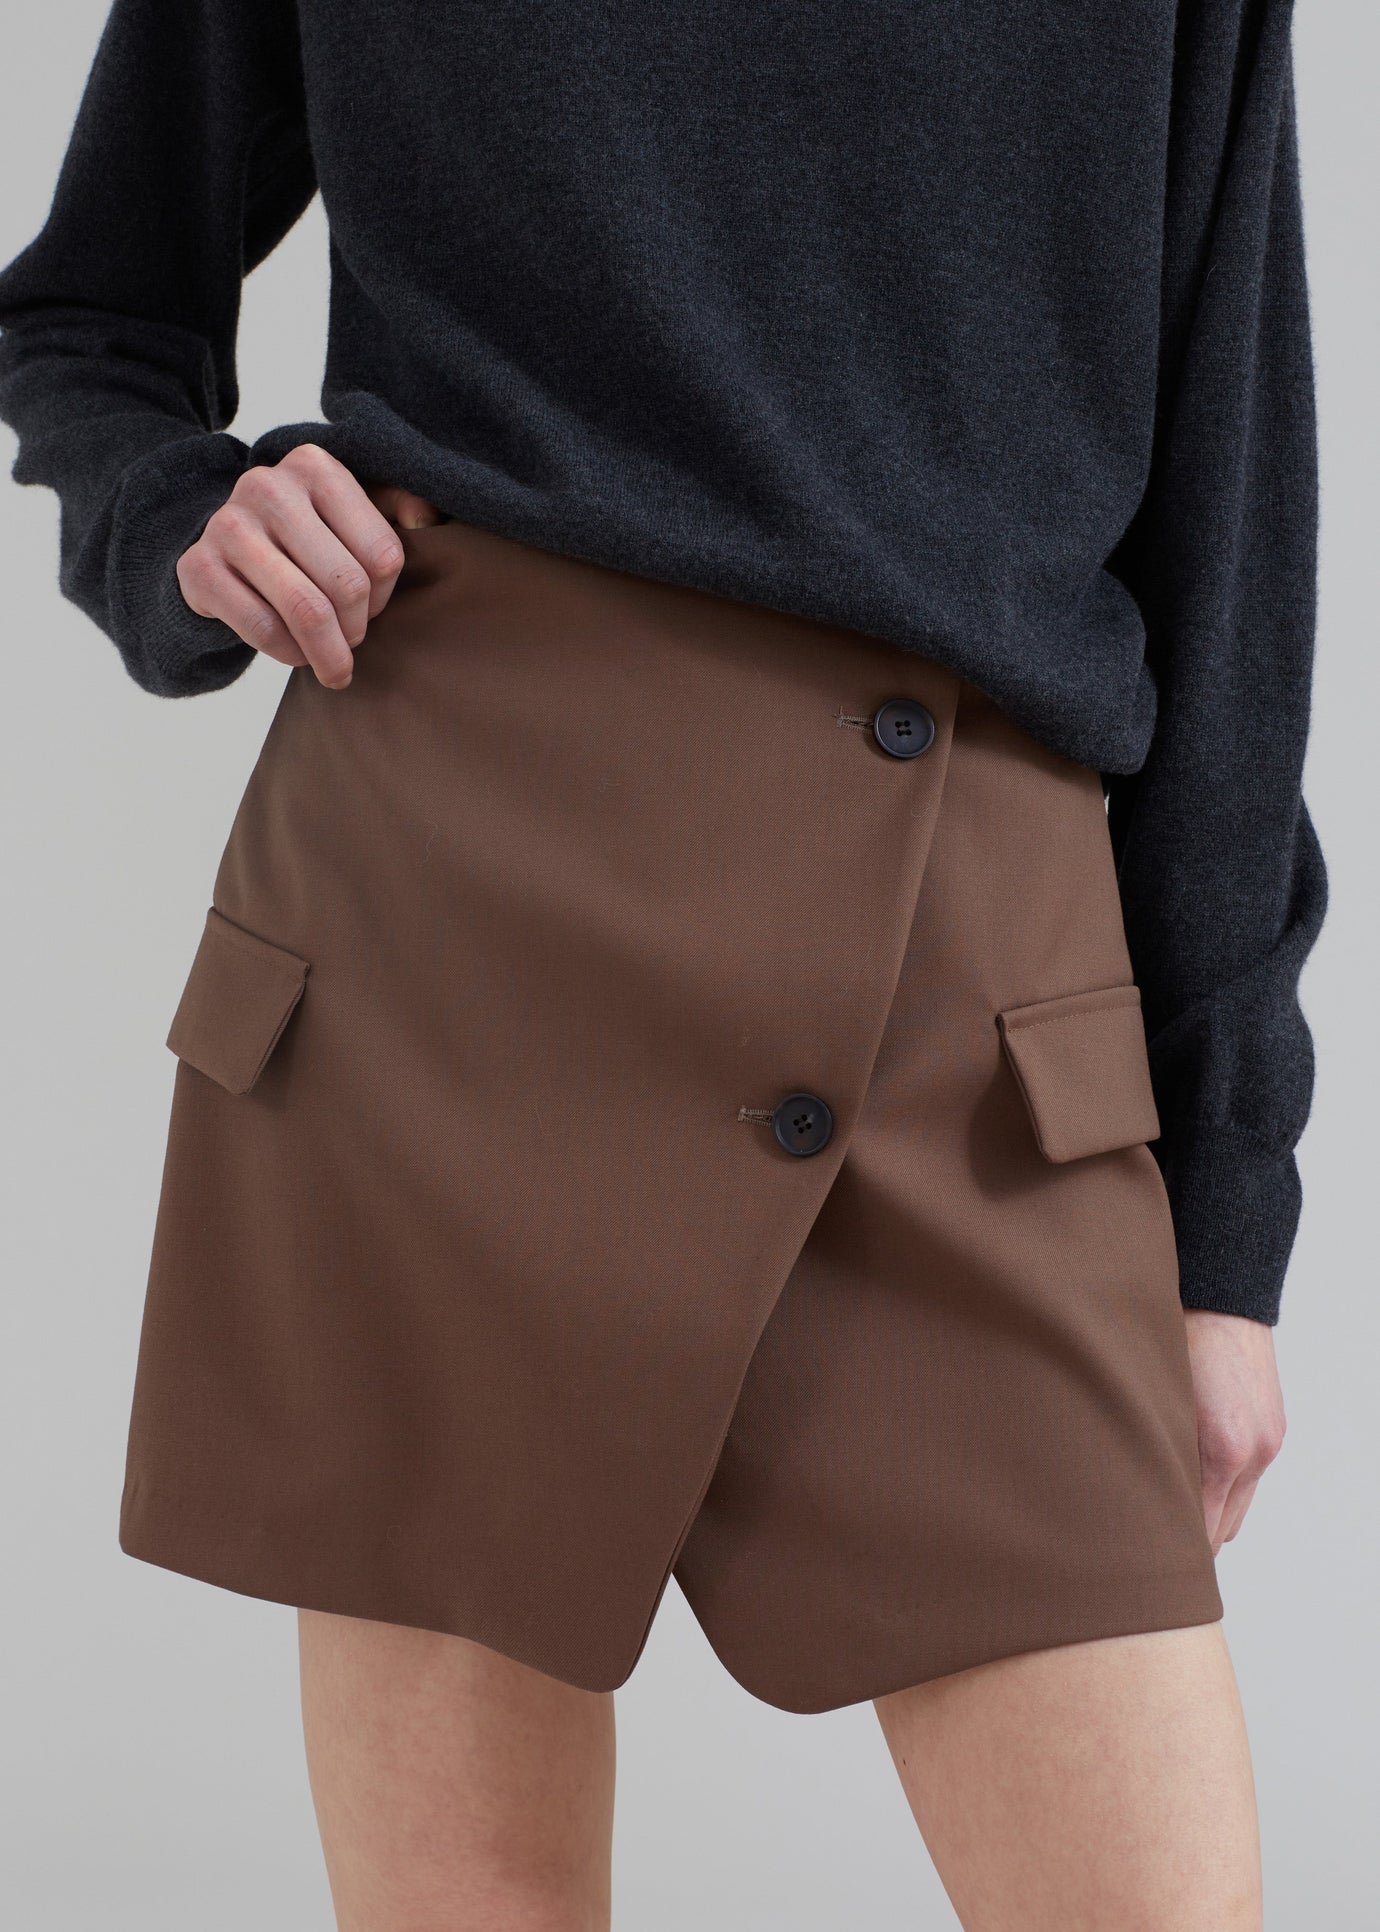 Camsel Cross Skirt - Brown - 1